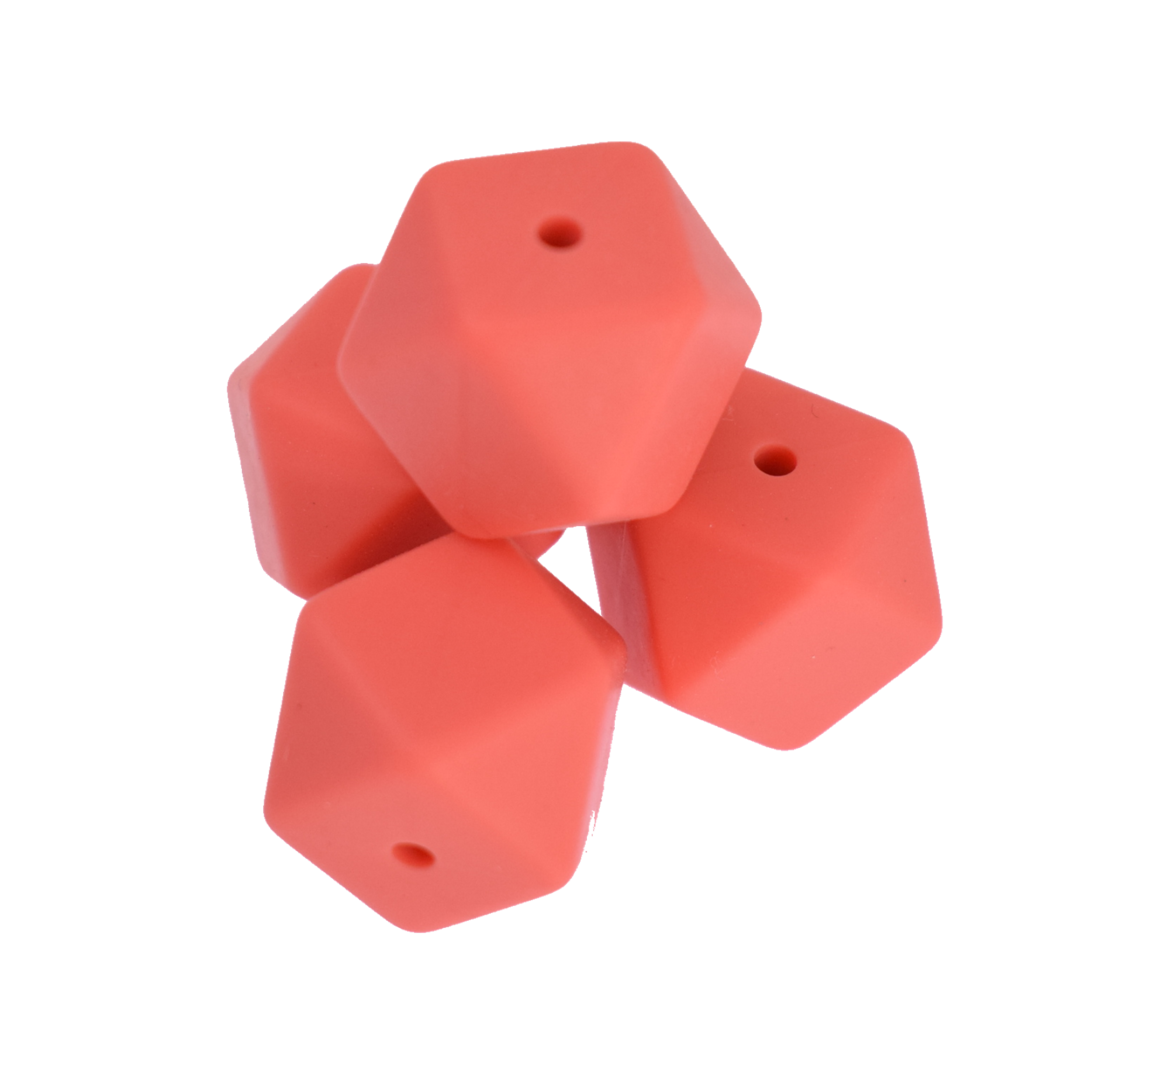 Hexagon 17mm